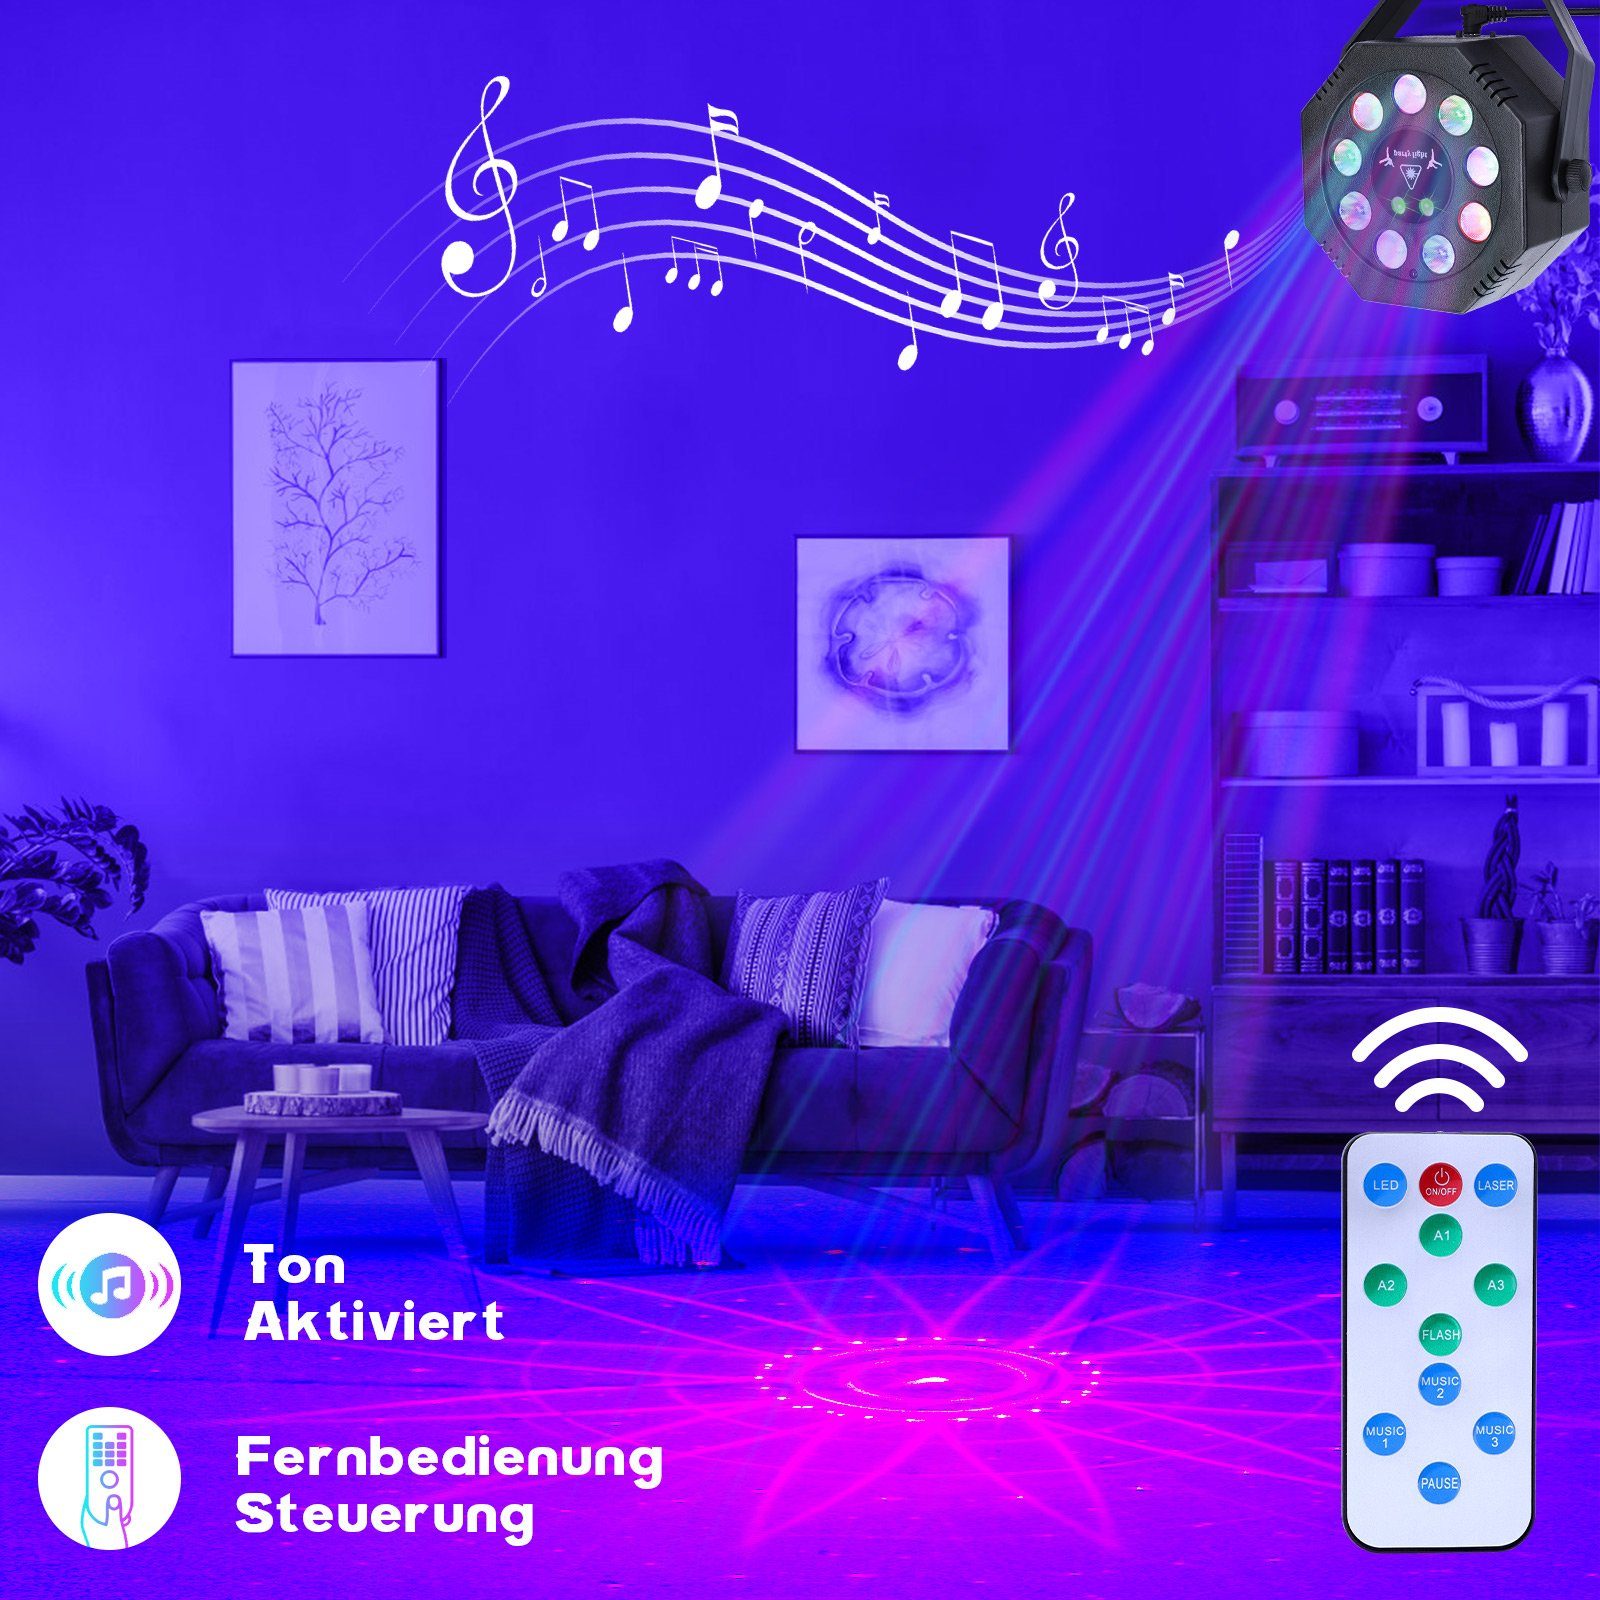 Rosnek LED Discolicht Tragbar, Partys Halloween Weihnachten Aktiviert, USB, Fernbedienung, Bar Stroboskop, Sound für Bühne